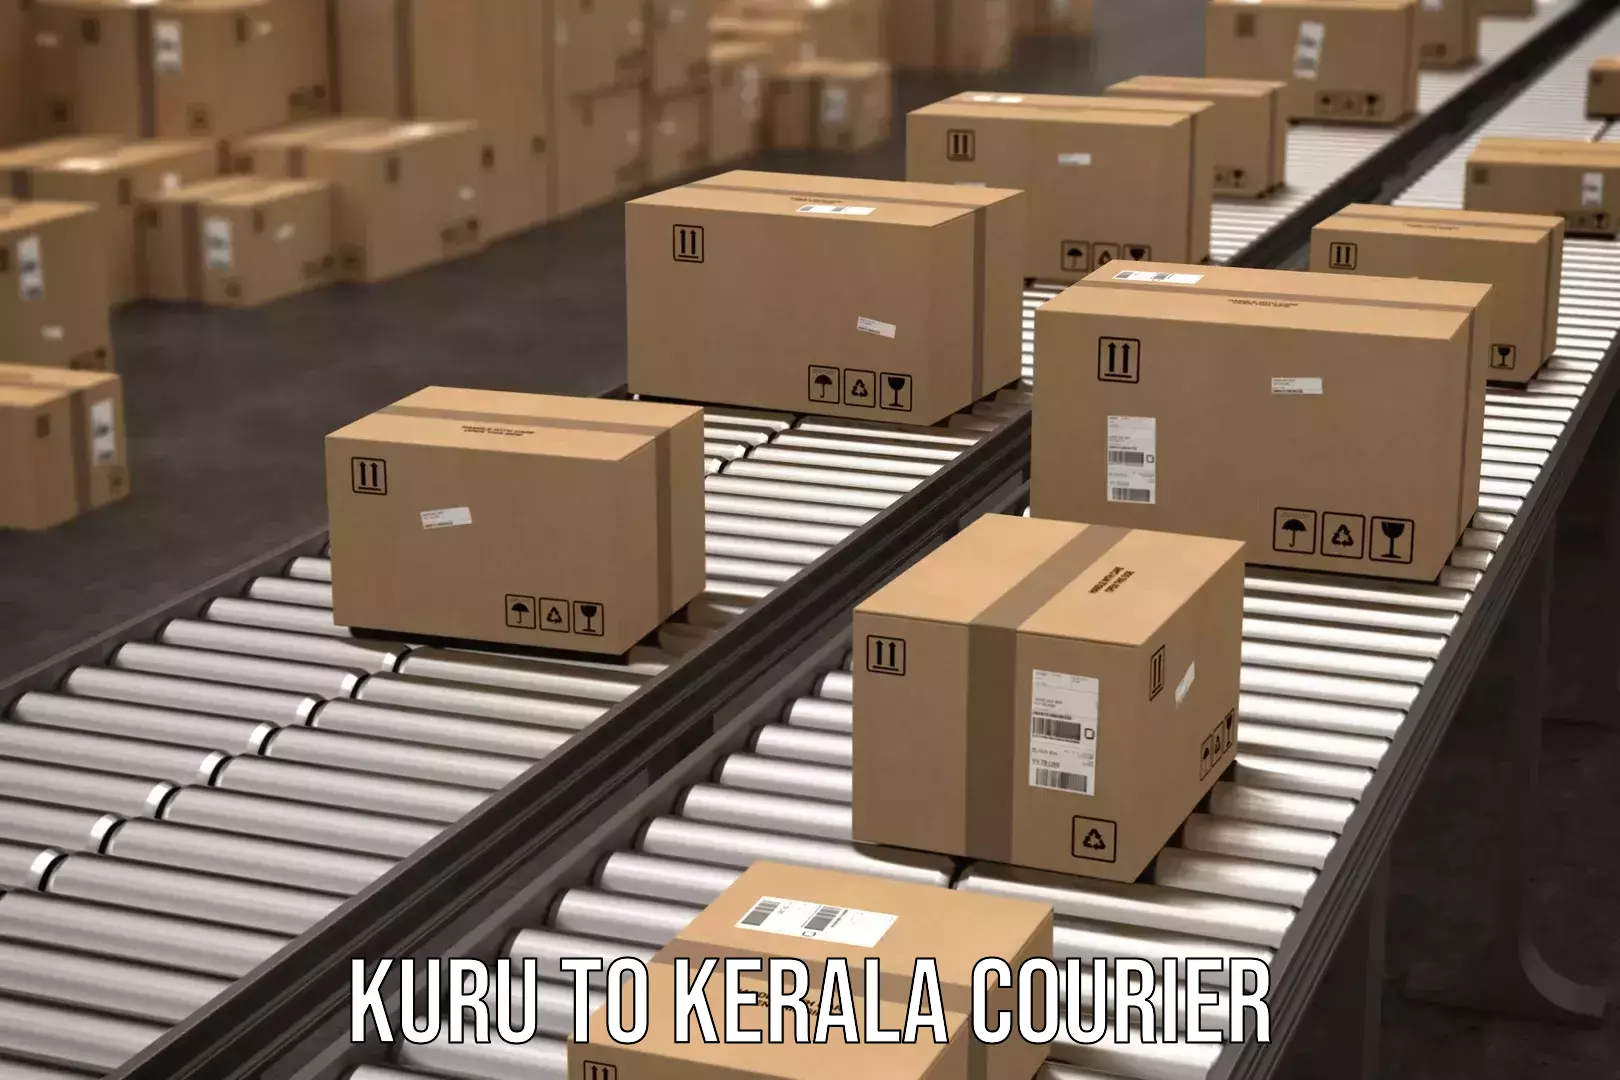 Cost-effective shipping solutions Kuru to Koothattukulam